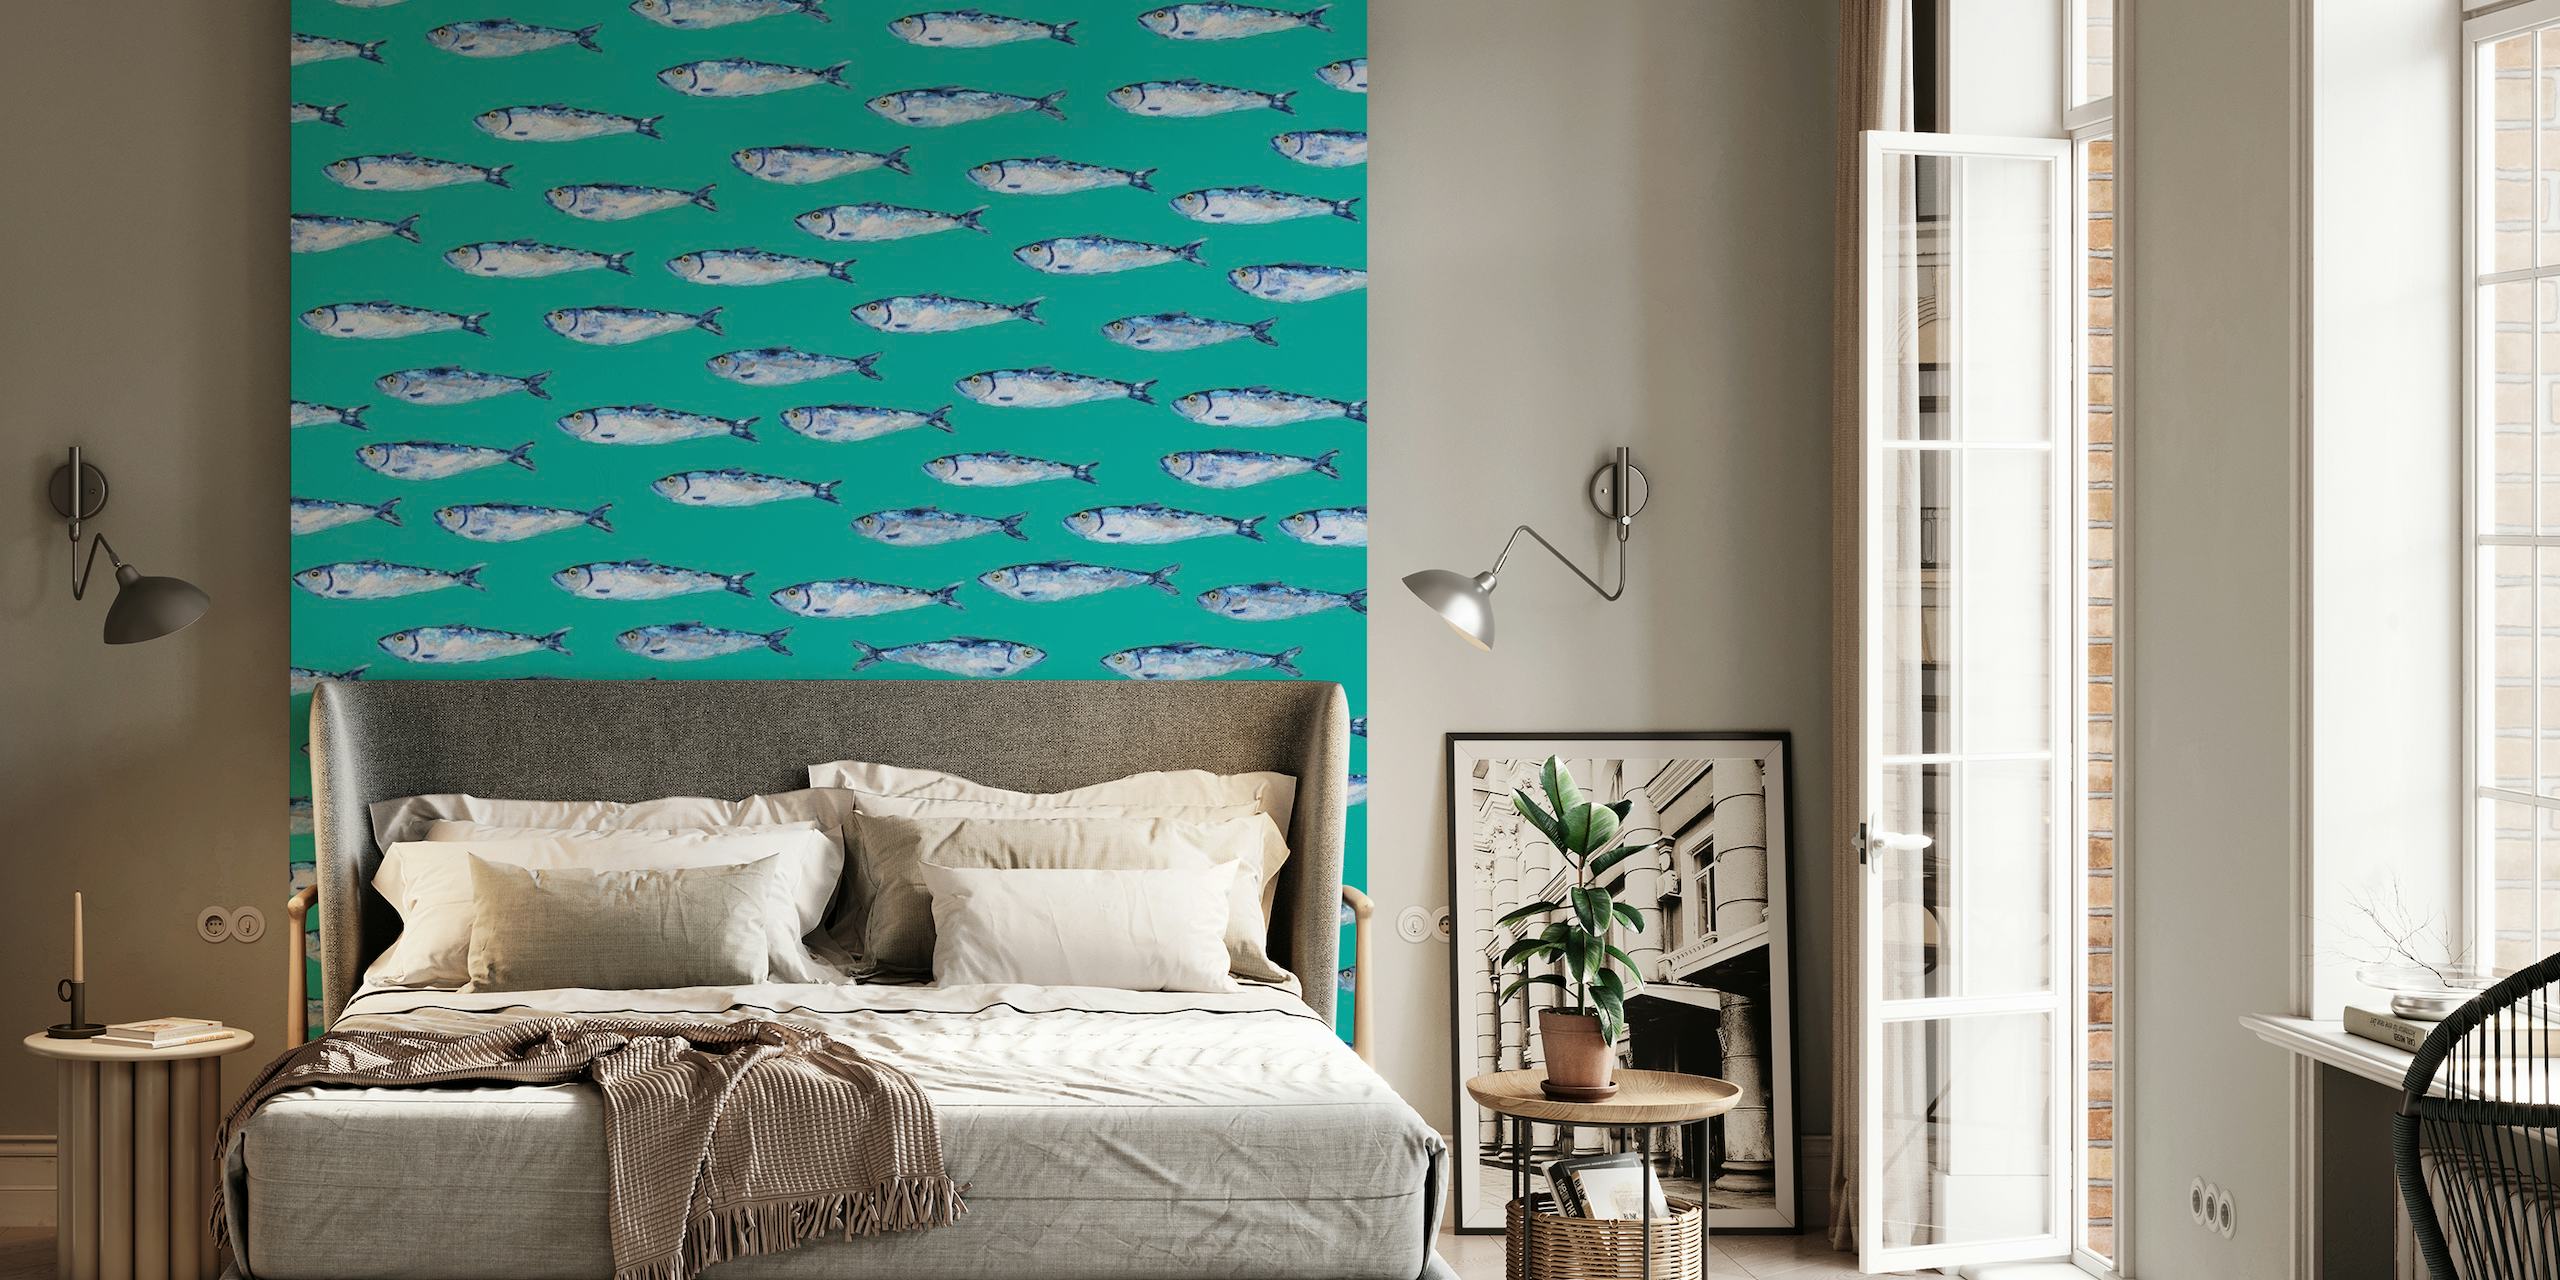 Silver sardiner mönster på en kricka fondväggmålning